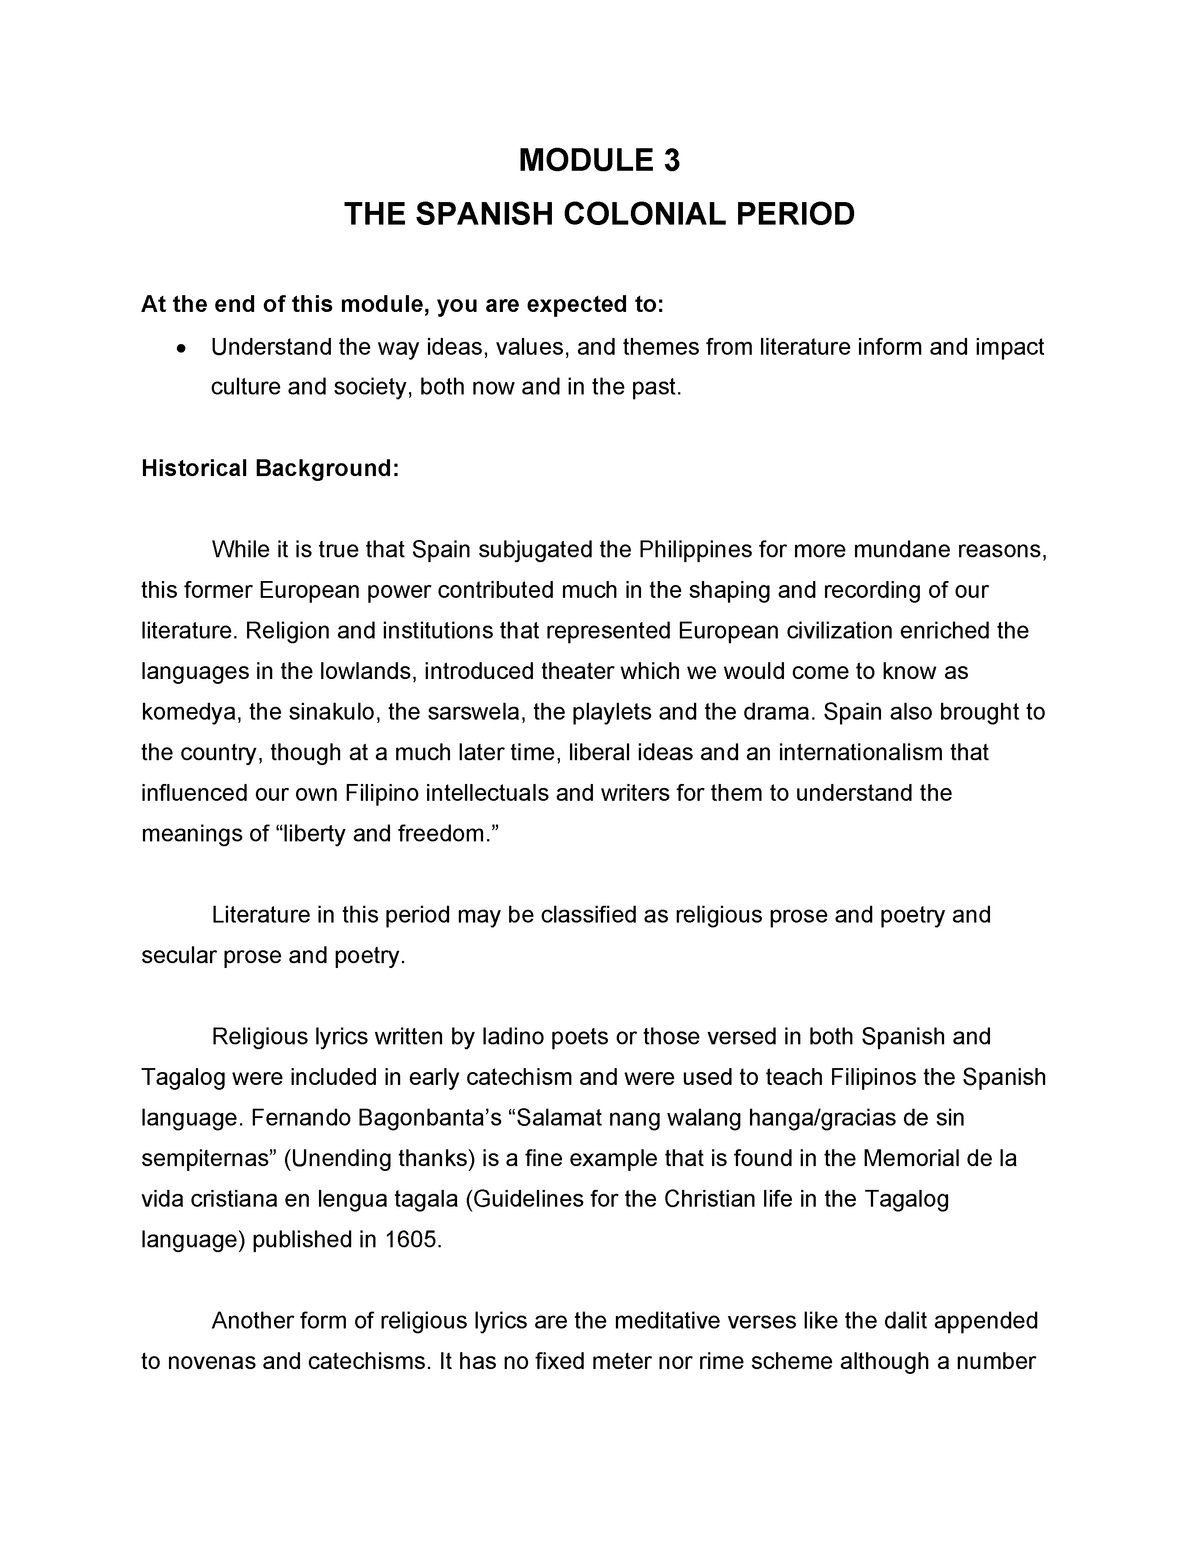 spanish period essay